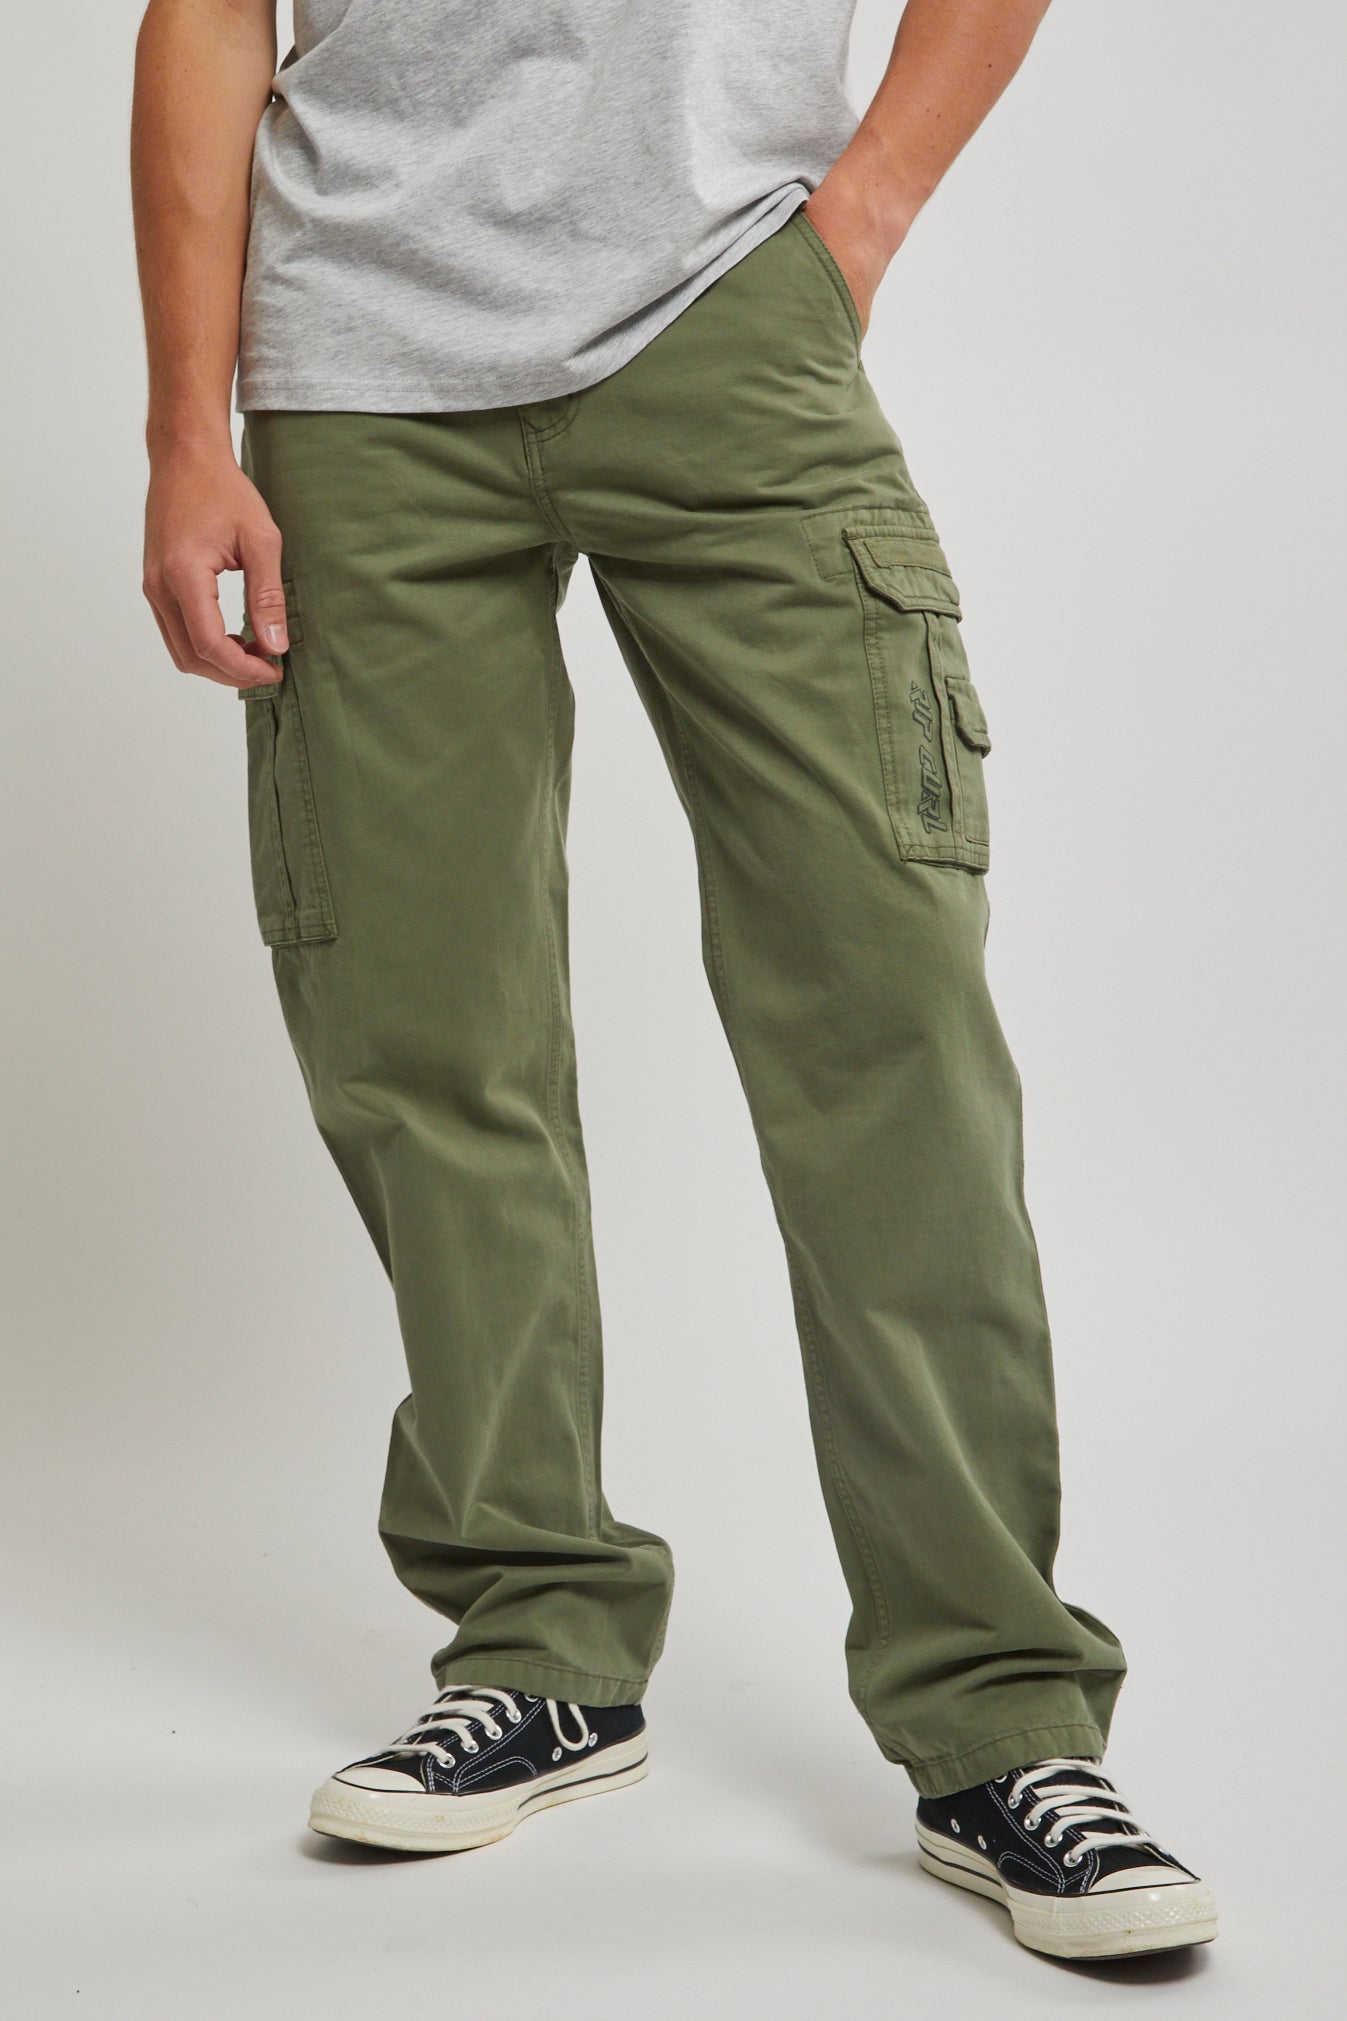 Wrangler Authentics Men's Cargo Pants Regular Fit Twill, Fleece